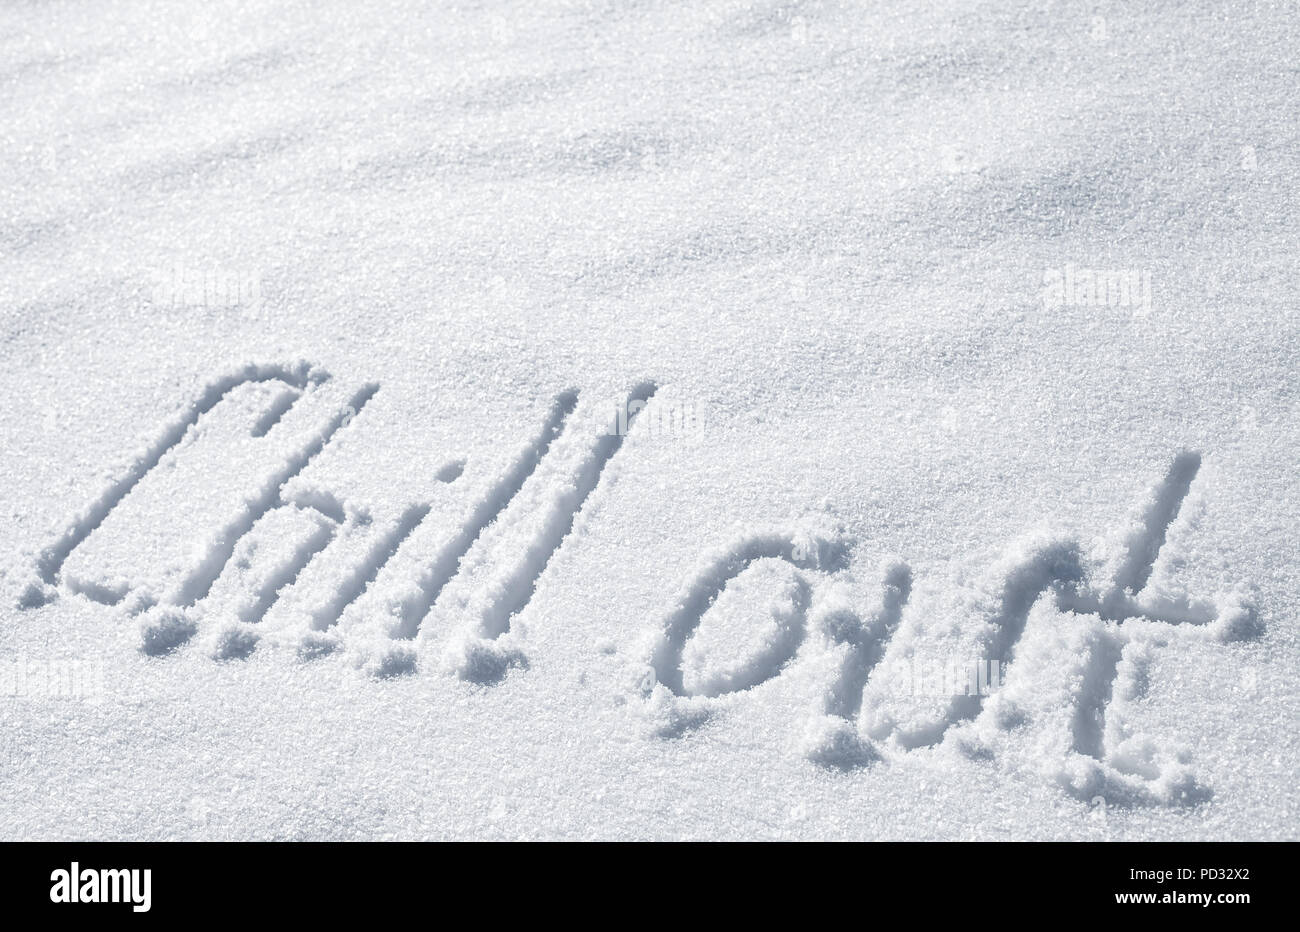 Chill out. Texte dessiné à la main sur la neige fraîche Banque D'Images